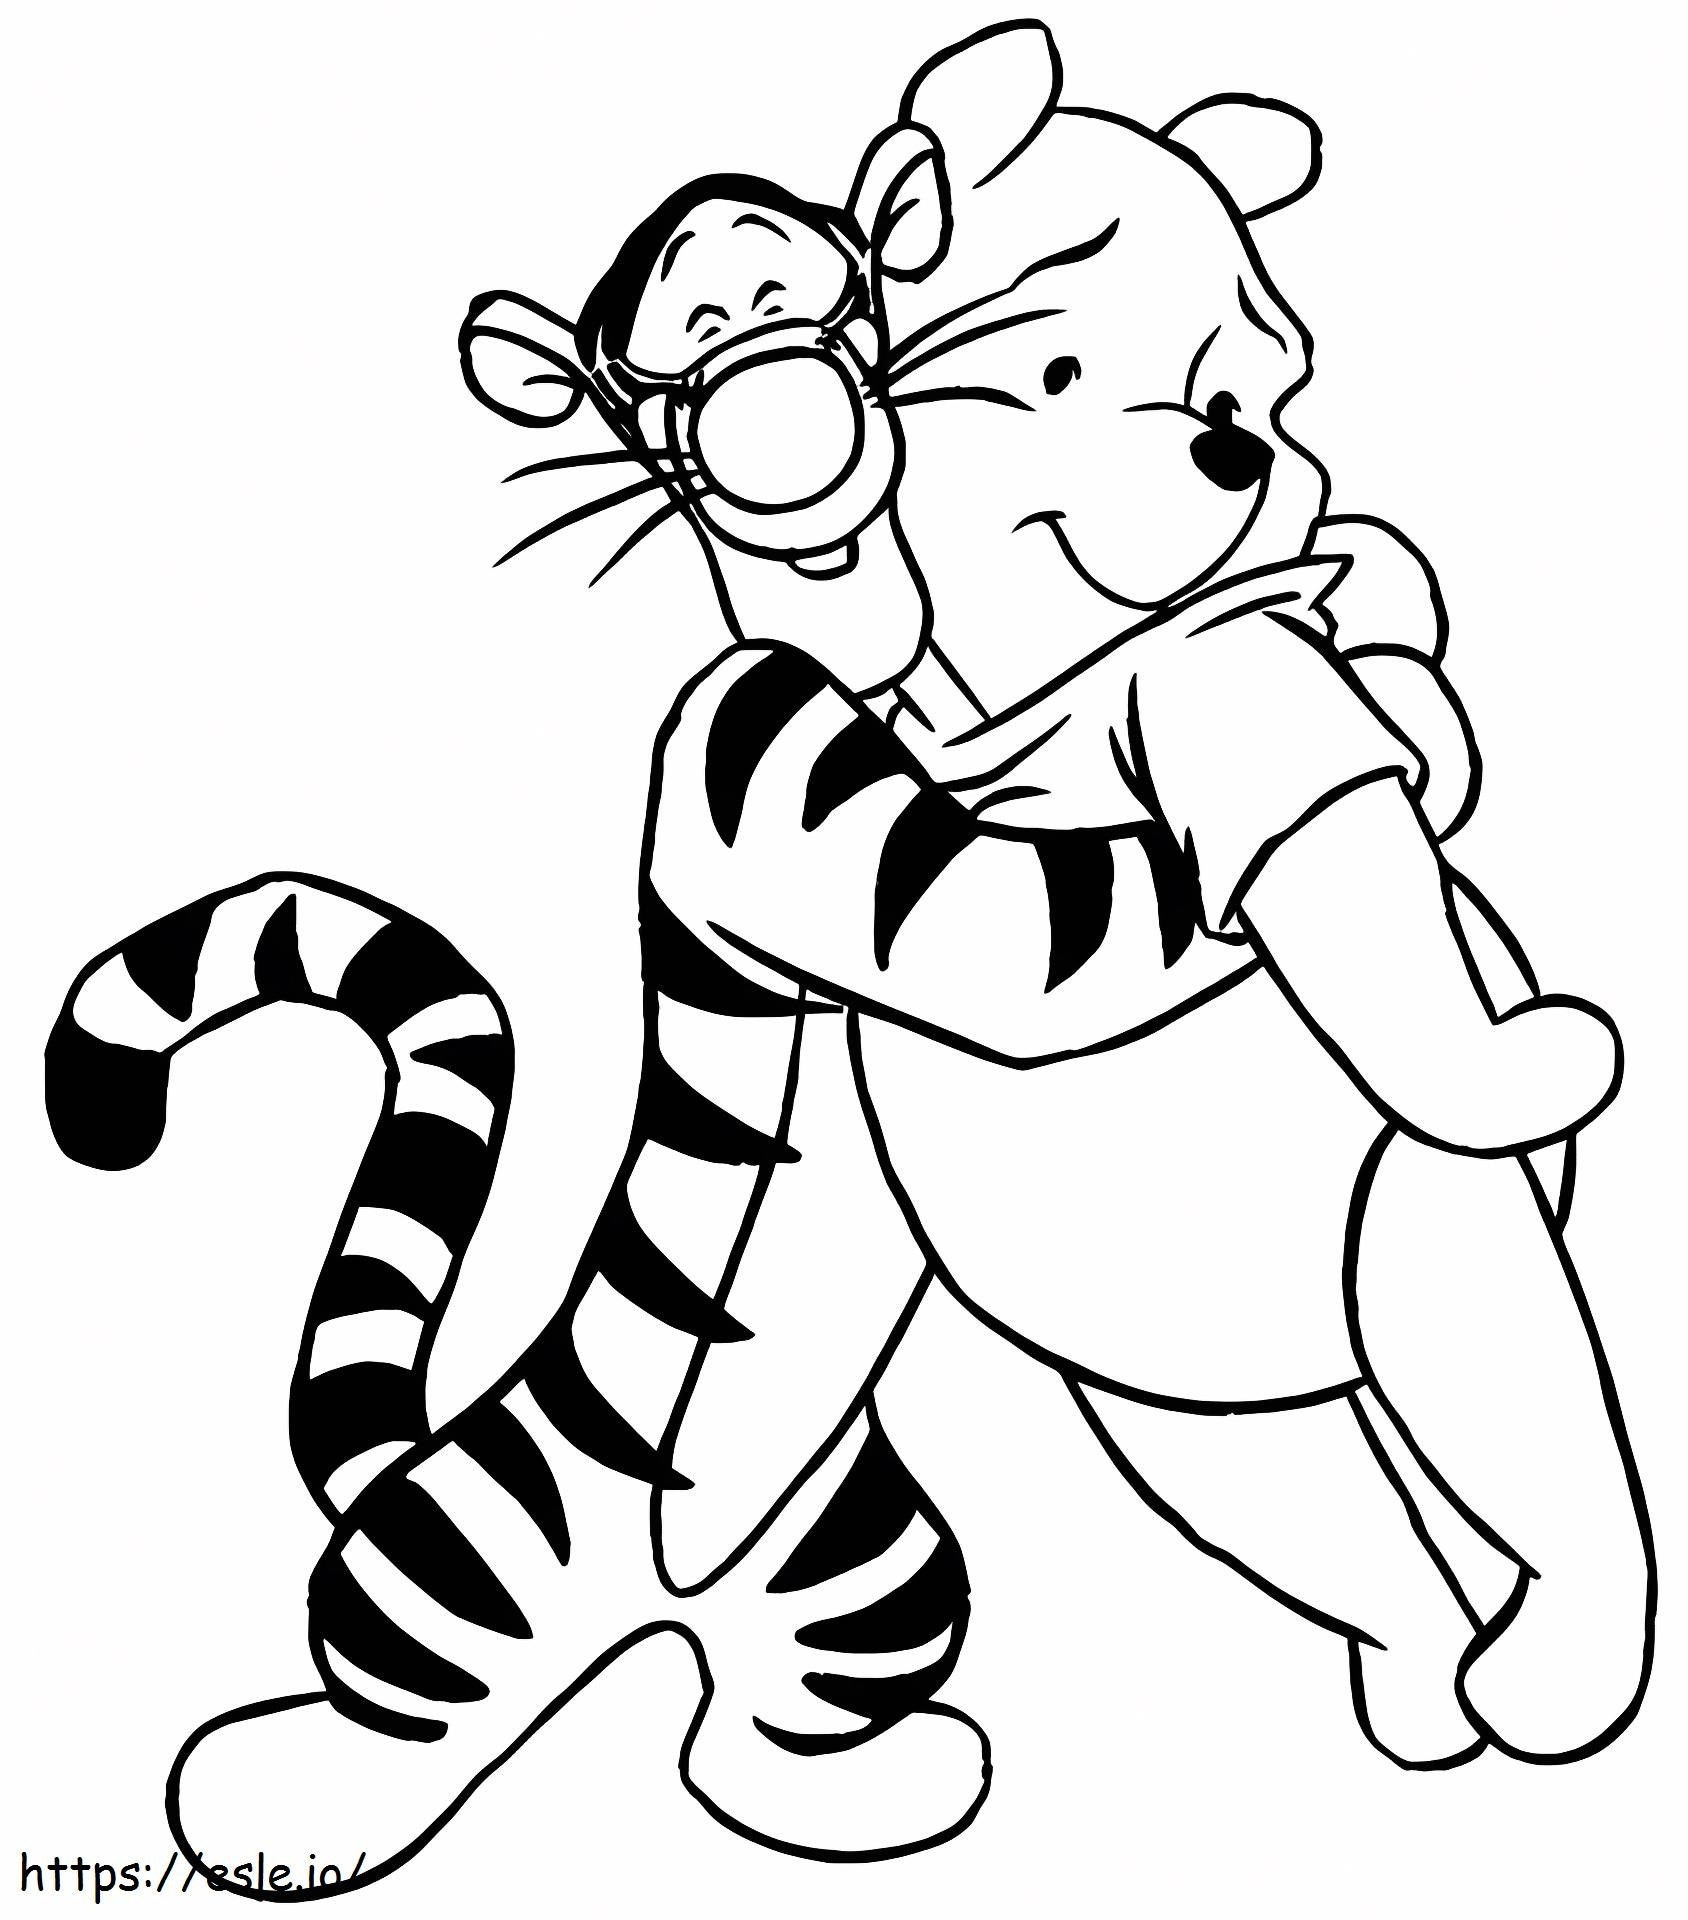 1532919356 Tygrysek przytulający Puchatka A4 kolorowanka